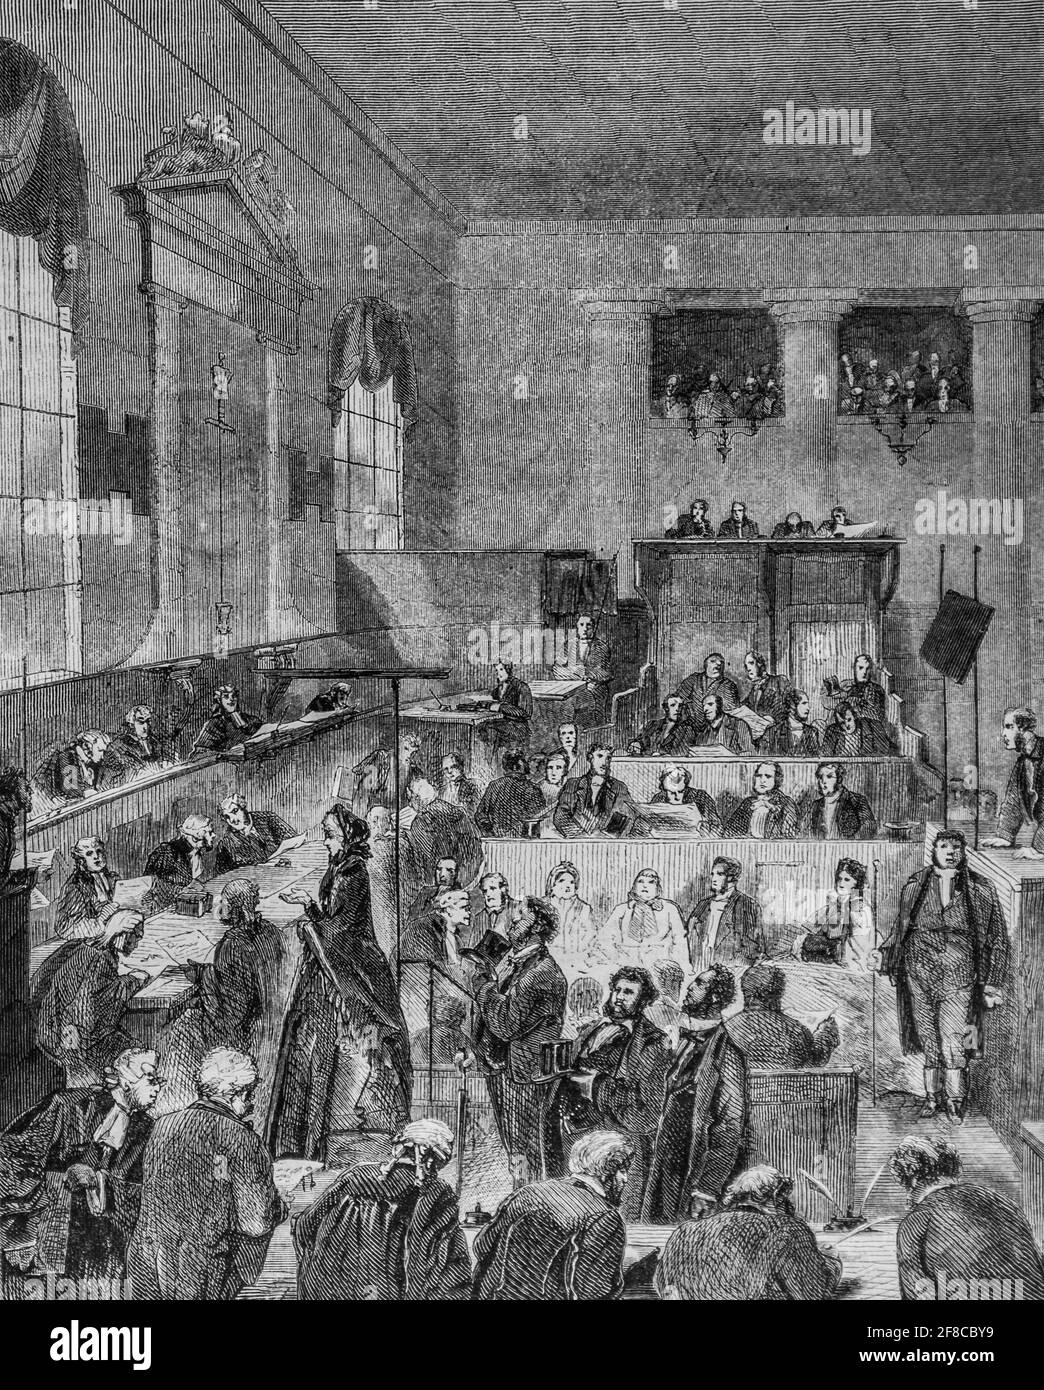 une audience a old-bailey cour de justice a londres ,le magazin pittoresque par m. edouard charton 1870 Stock Photo